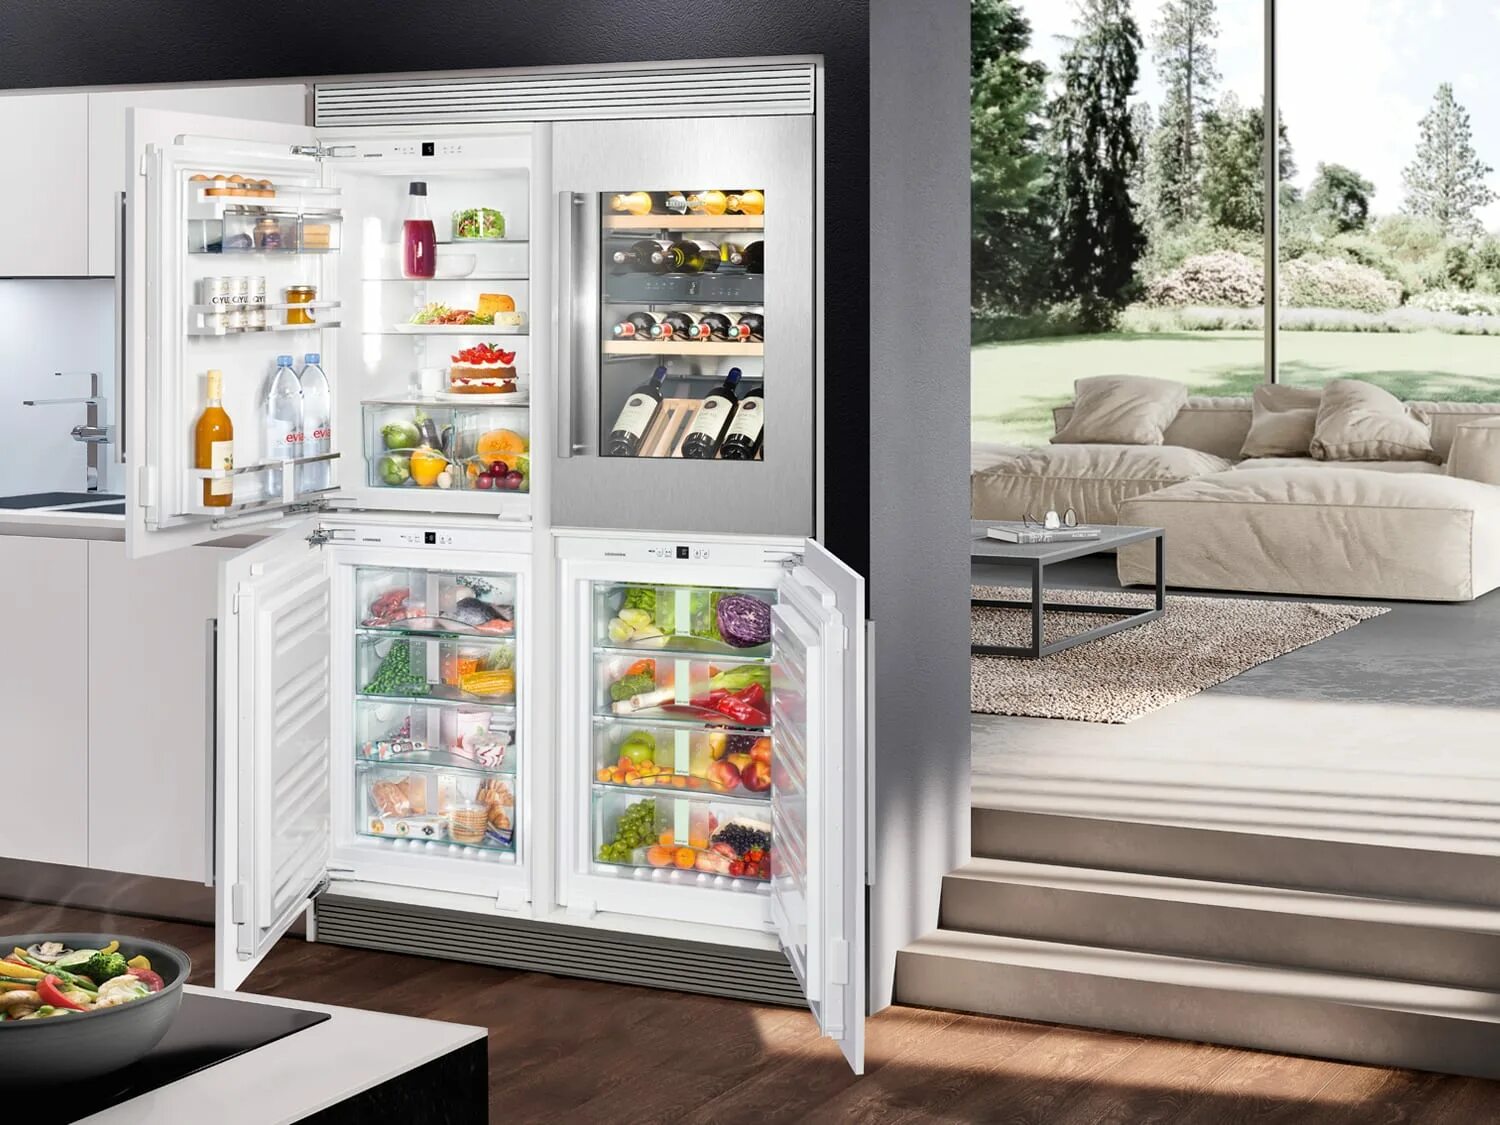 Новые модели холодильников. Холодильник Либхер двухдверный. Холодильник Liebherr Side by Side. Холодильник Либхер с винным шкафом. Встраиваемый холодильник Liebherr с зоной свежести.